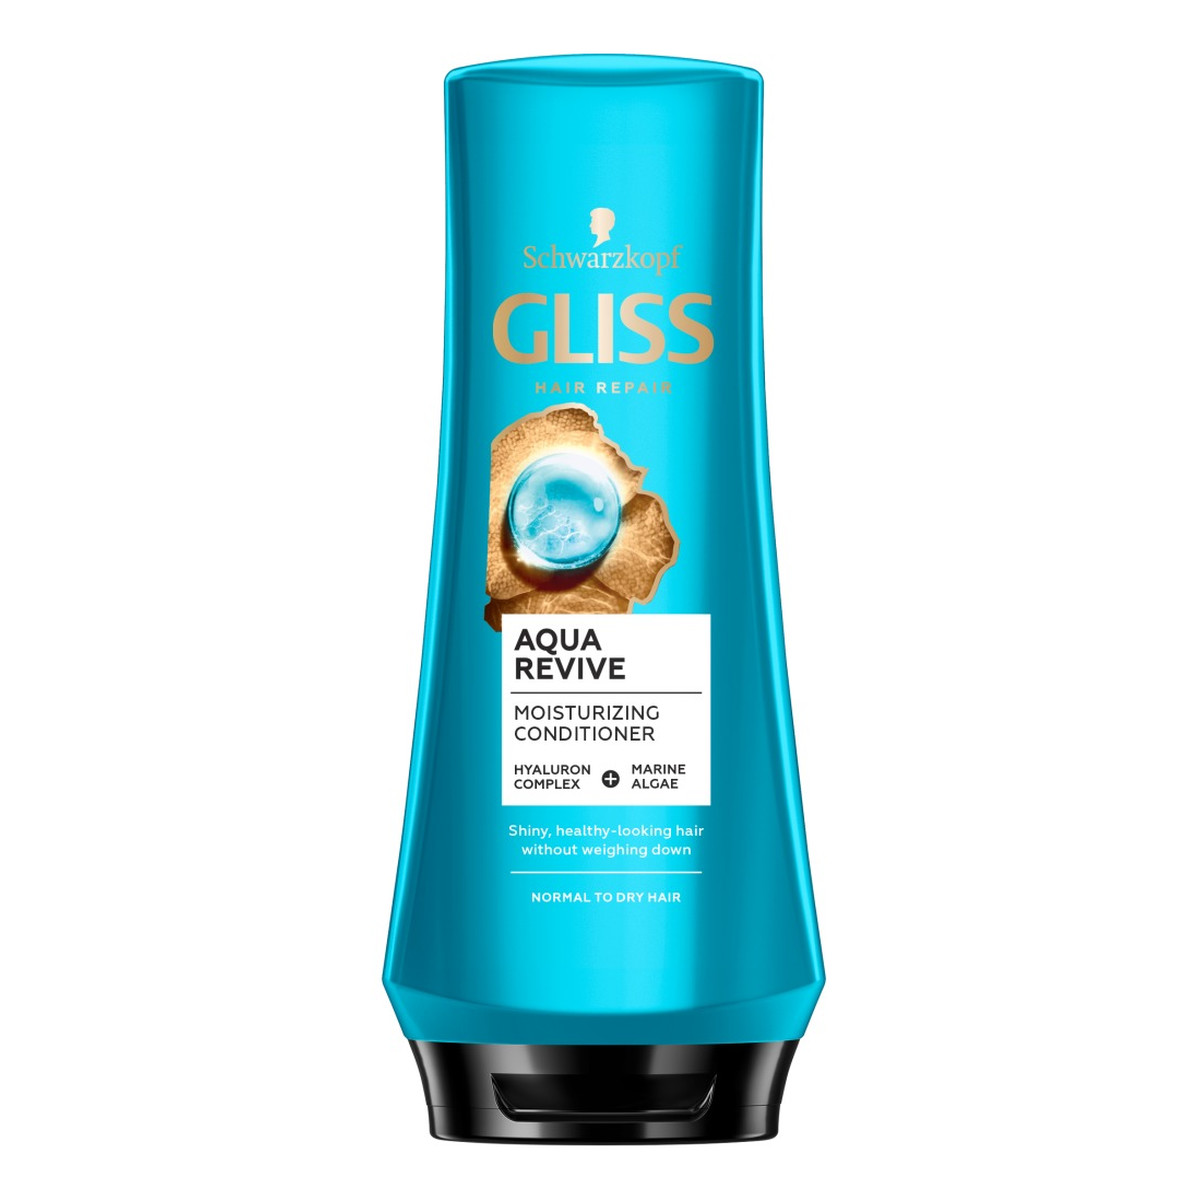 Gliss Aqua revive odżywka do włosów suchych i normalnych 200ml